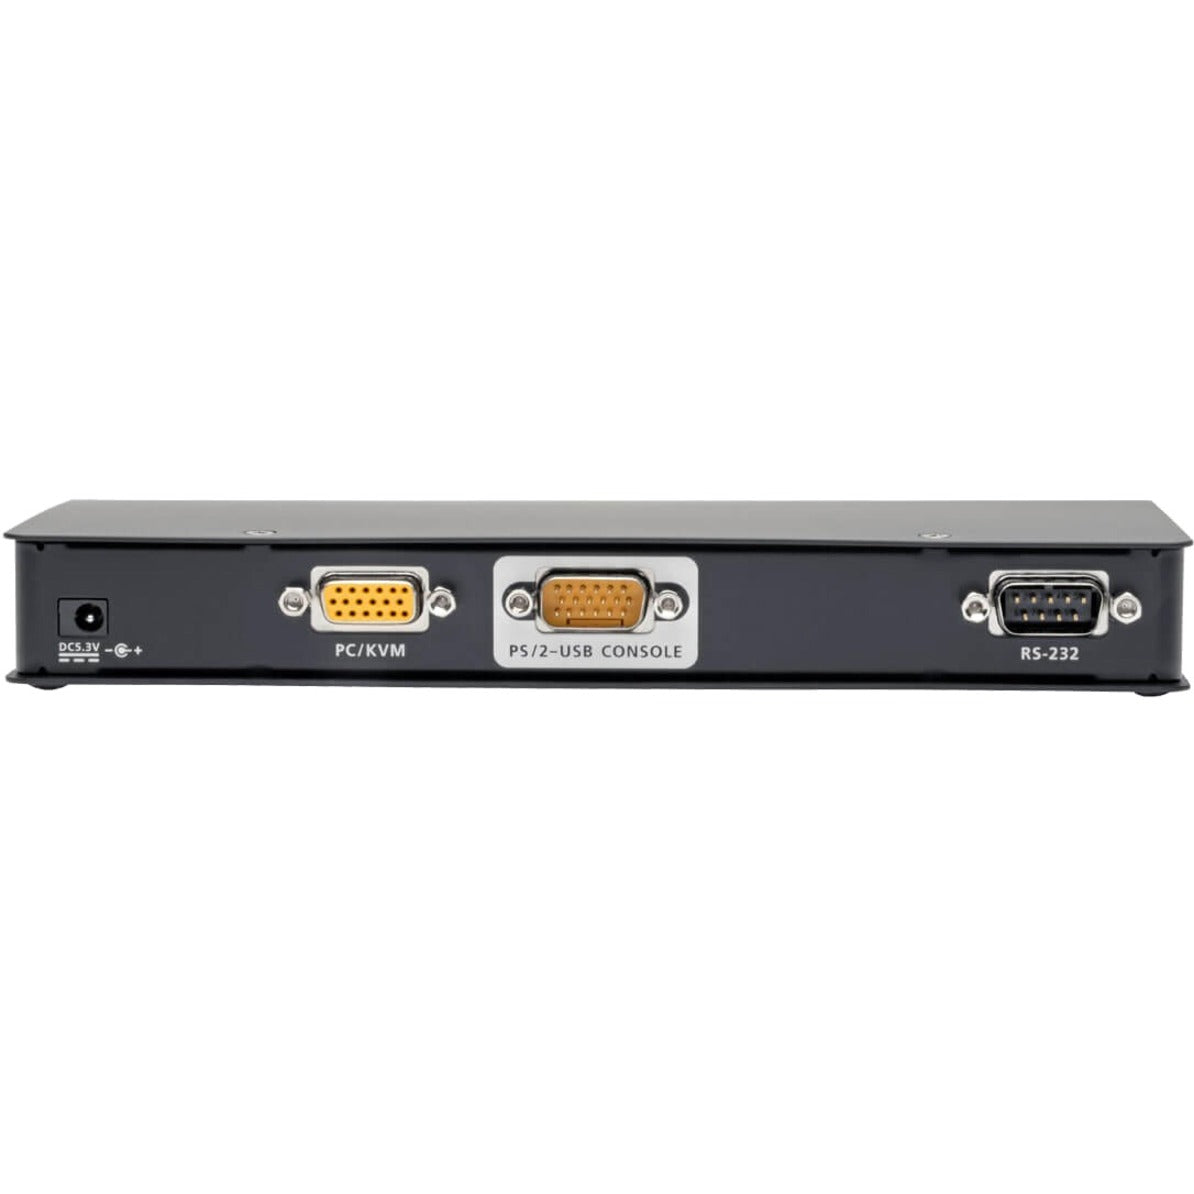 تريپ لایت B051-000 مفتاح جهاز التبديل عن بُعد IP، منفذ USB/Serial، ضمان لمدة 3 سنوات، متوافق مع TAA ثلاثة سنوات الضمان المحمولة المتوافقة المنفذ USB تريپ لایت